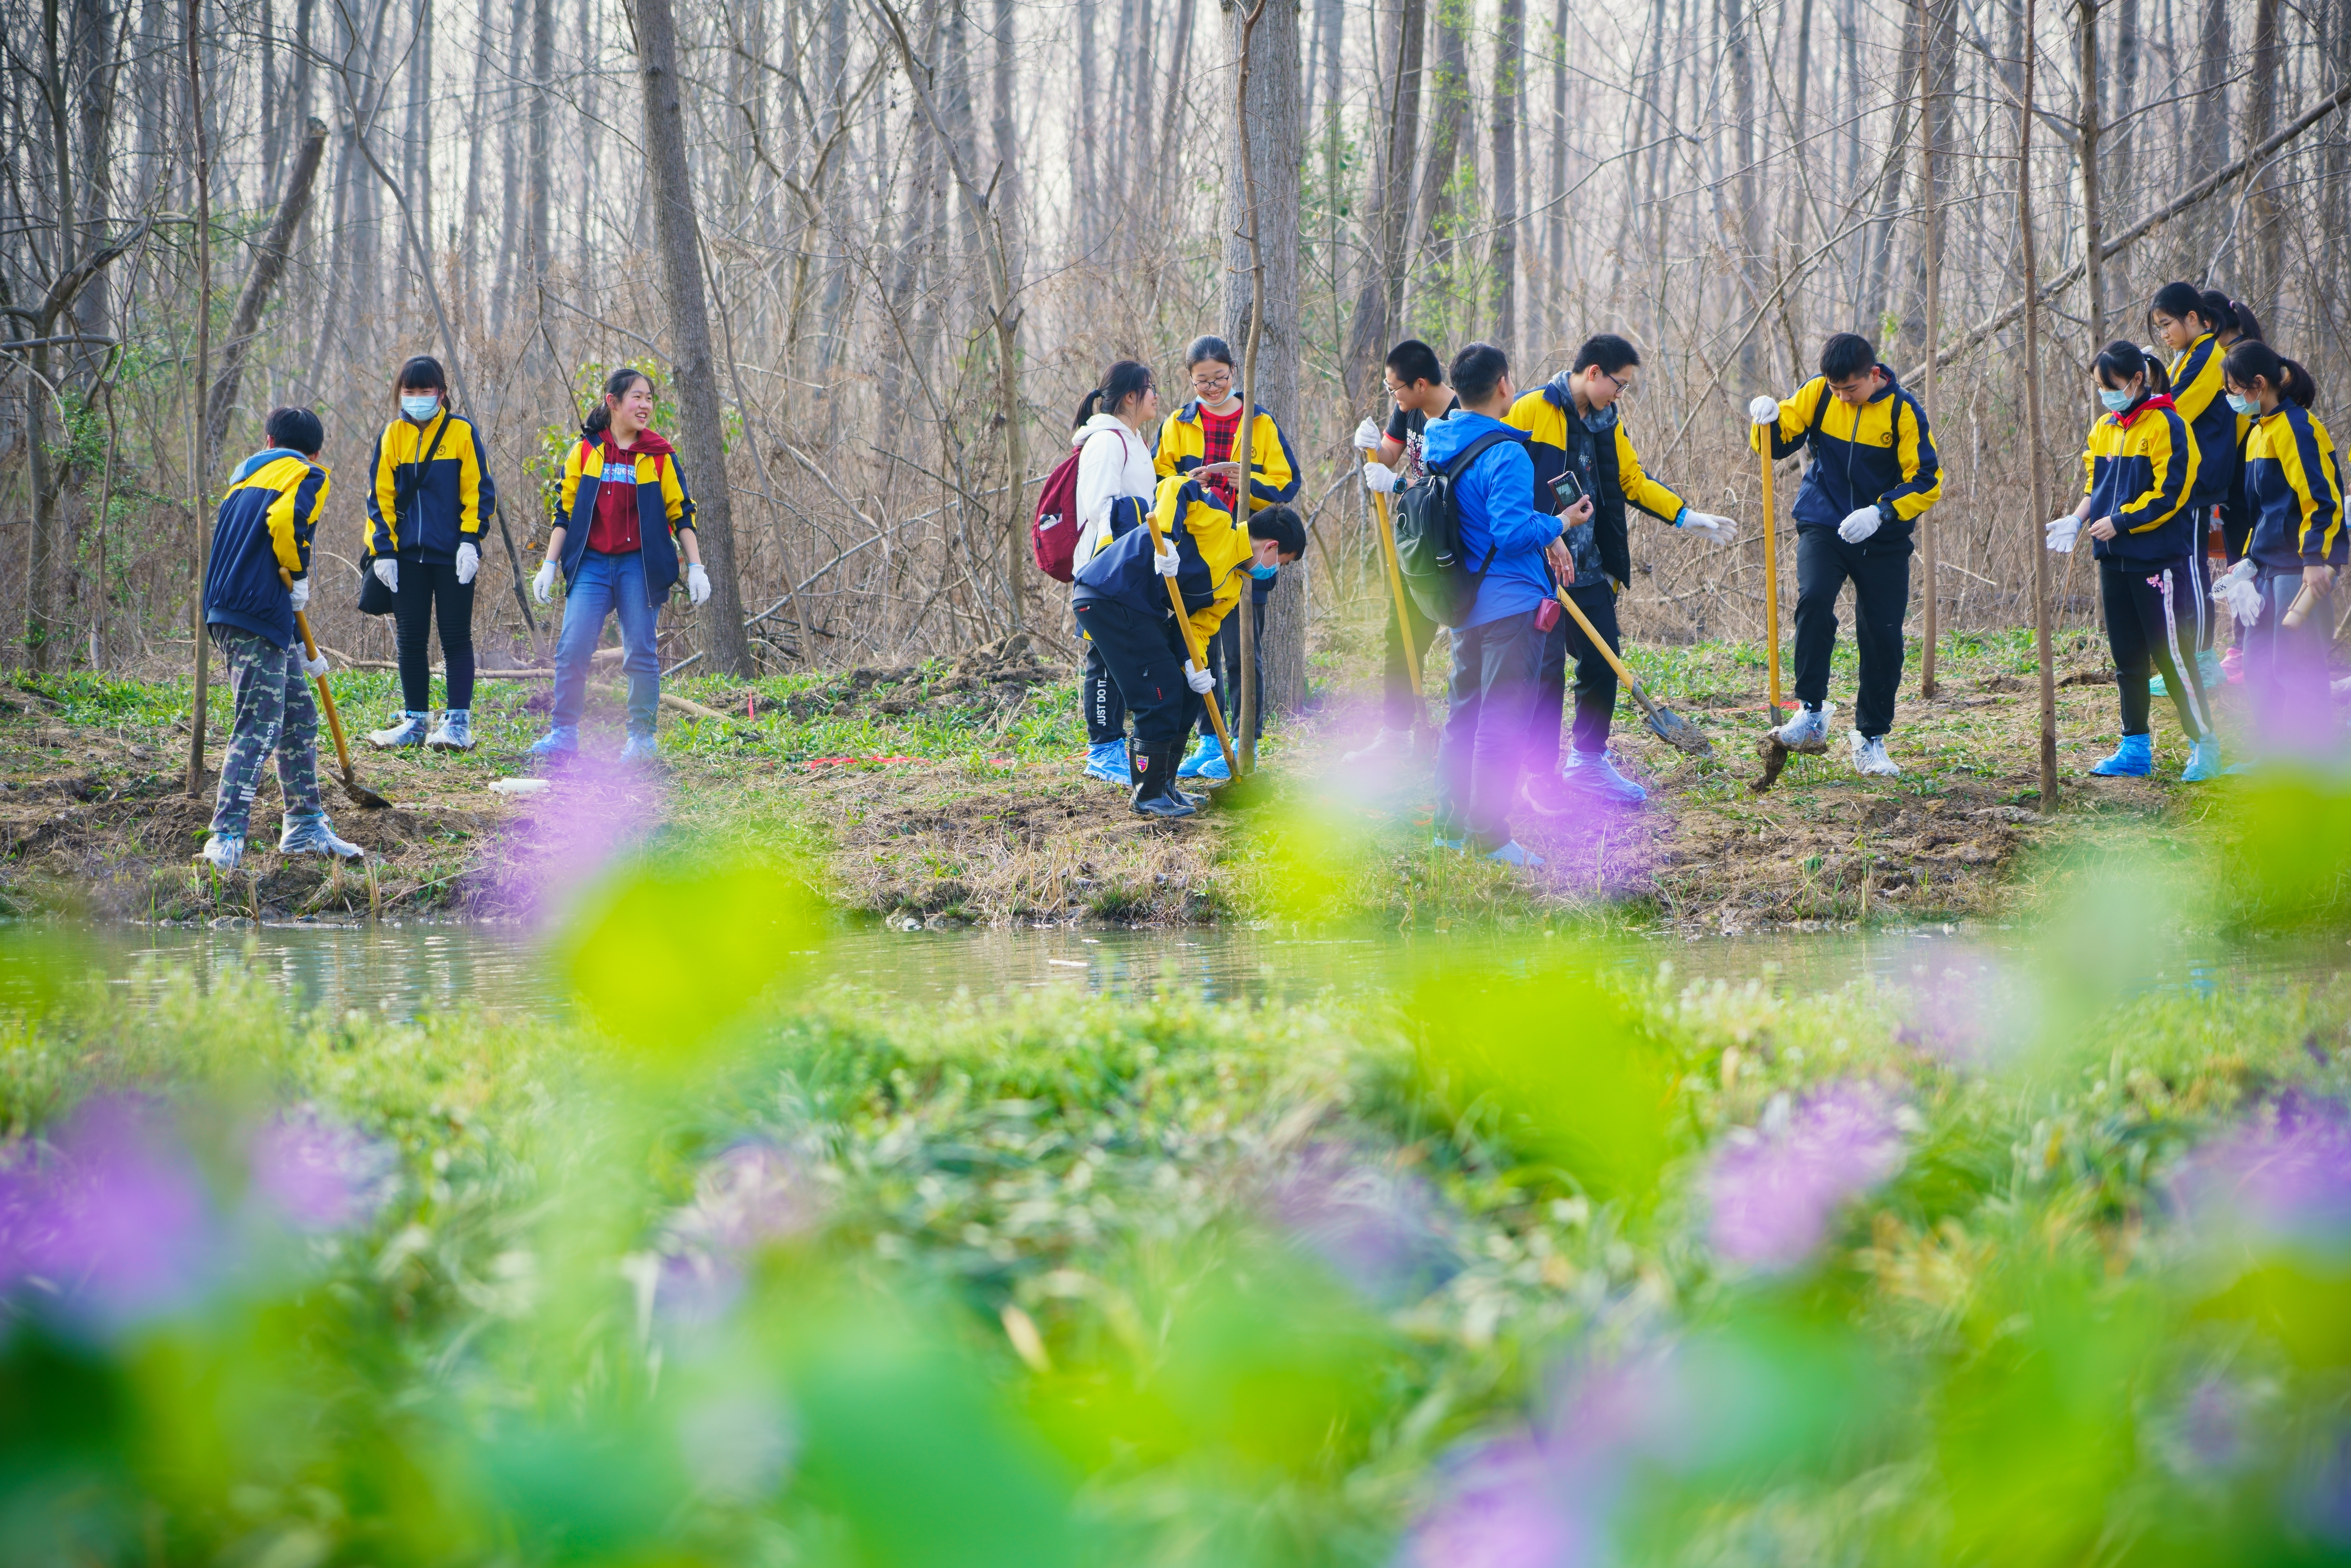 2021年3月12日是植树节，合肥天气转晴，春光明媚。在滨湖国家森林公园，不少学生志愿者穿着校服前来义务植树，翻土、挑水各司其职，在公园中忙得不亦乐乎。.jpg